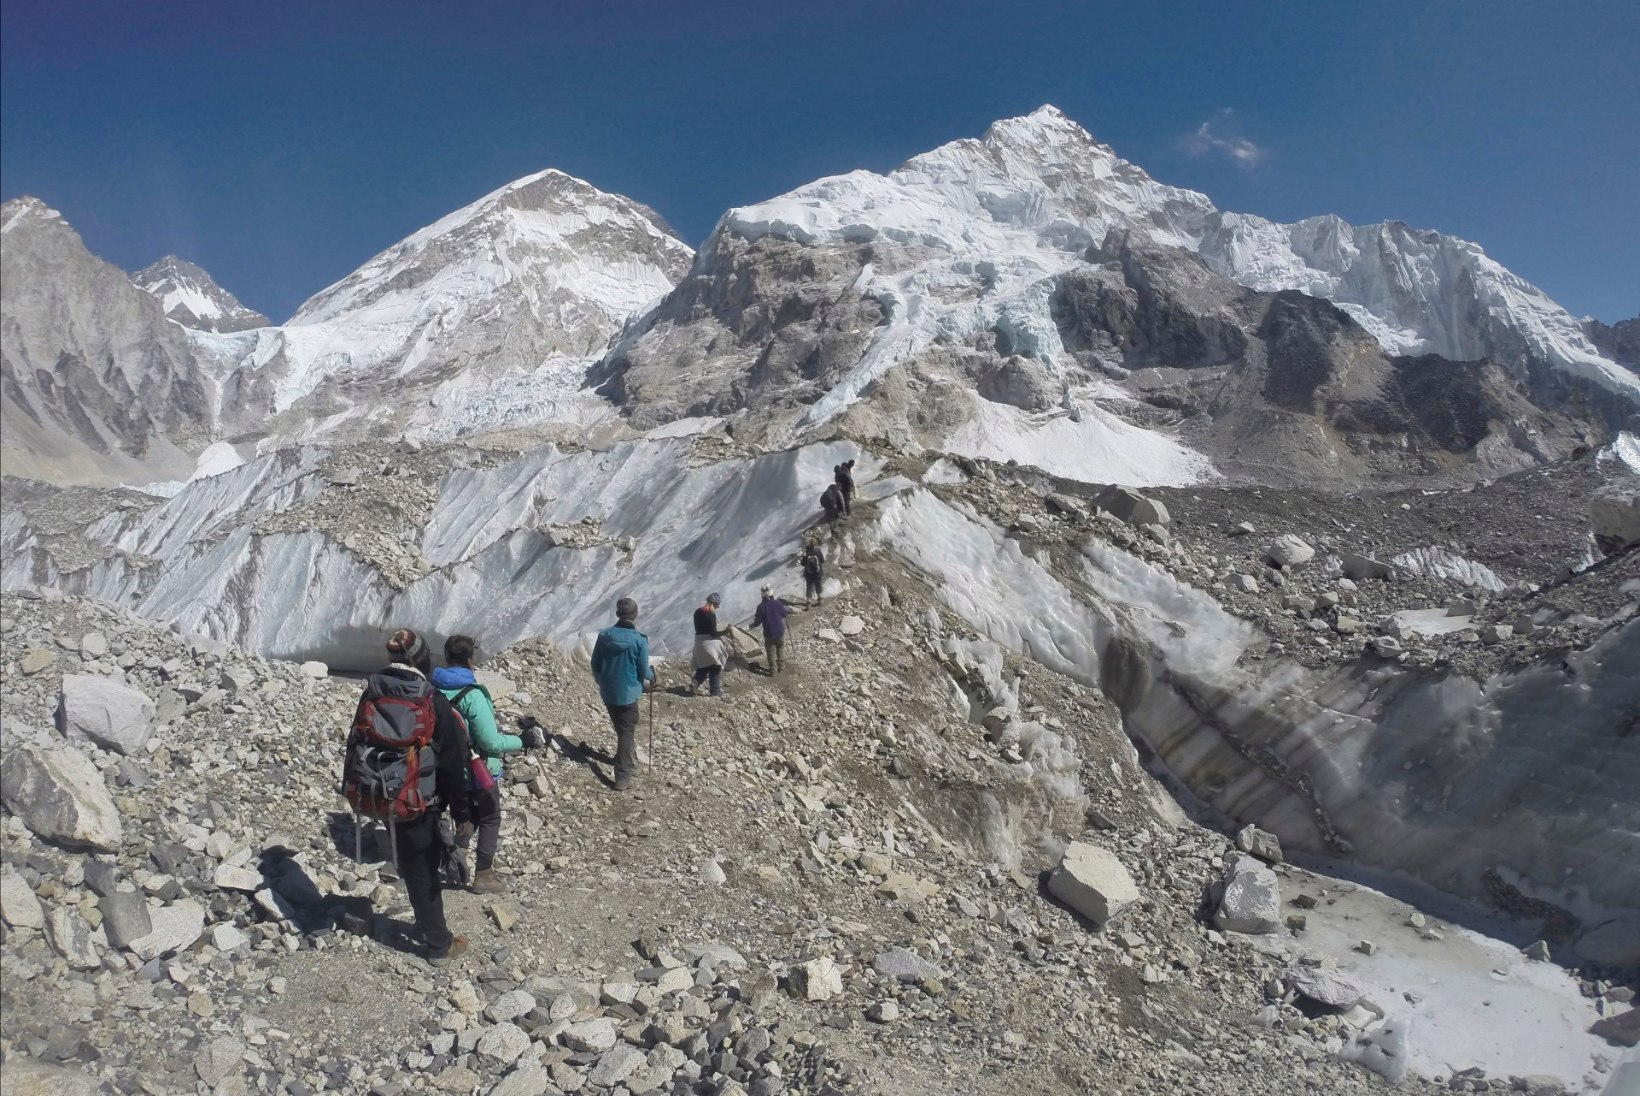 Must hooaeg maailma kõrgeimal tipul jätkub: Mount Everestil leiti telgist nelja inimese surnukehad